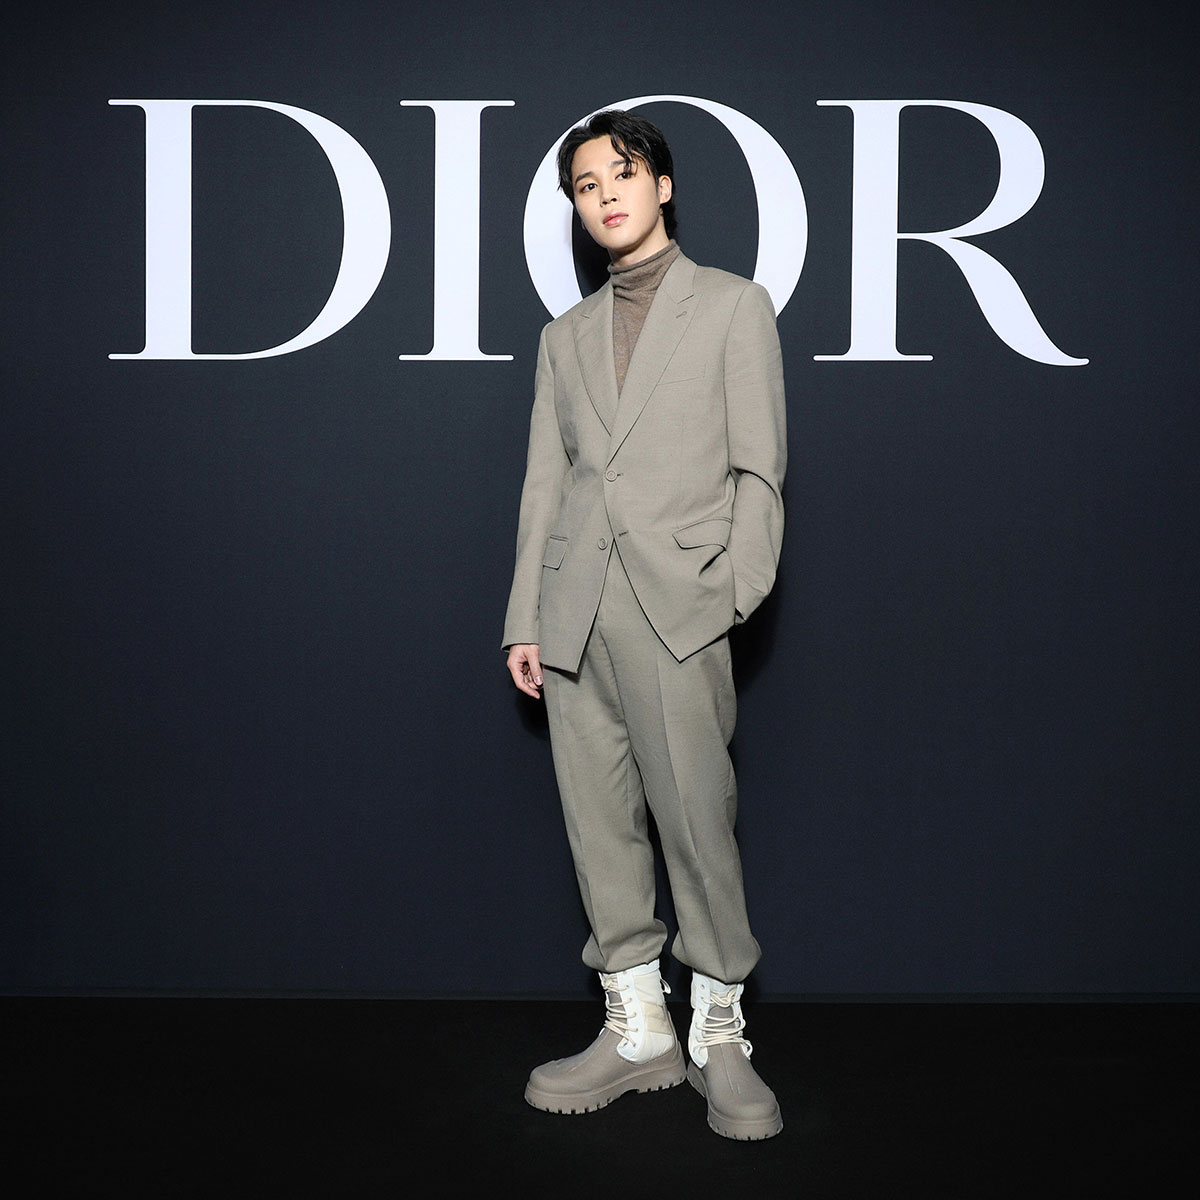 Dior và những điều chưa từng được bật mí về logo thương hiệu